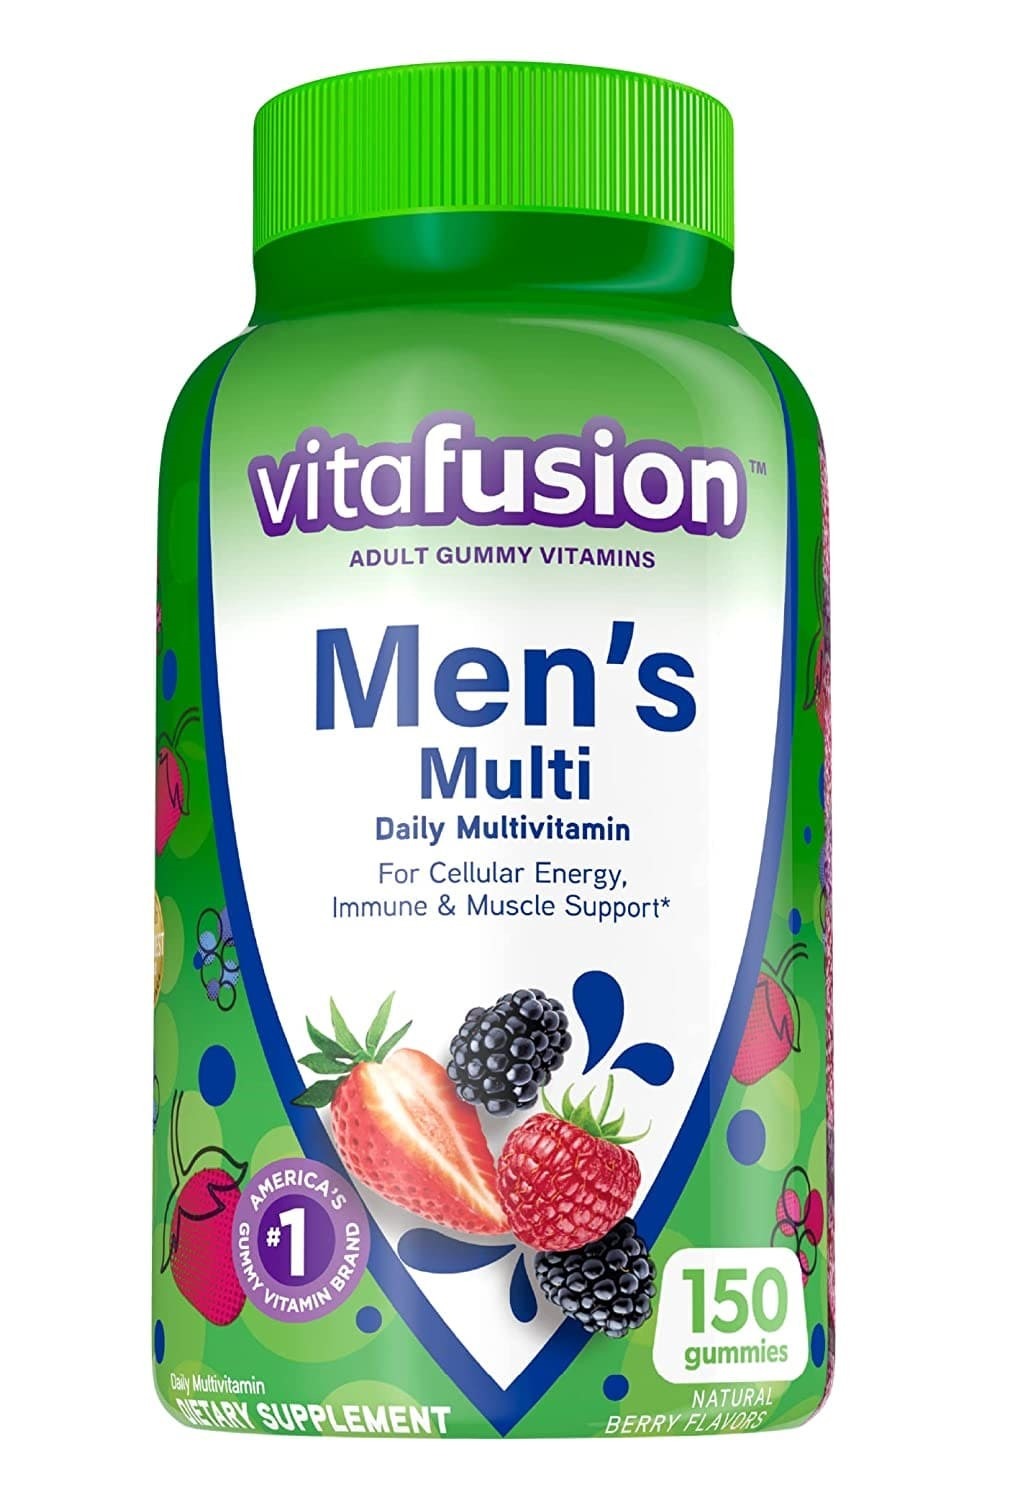 Vitafusion Men's multivitamin Gummy